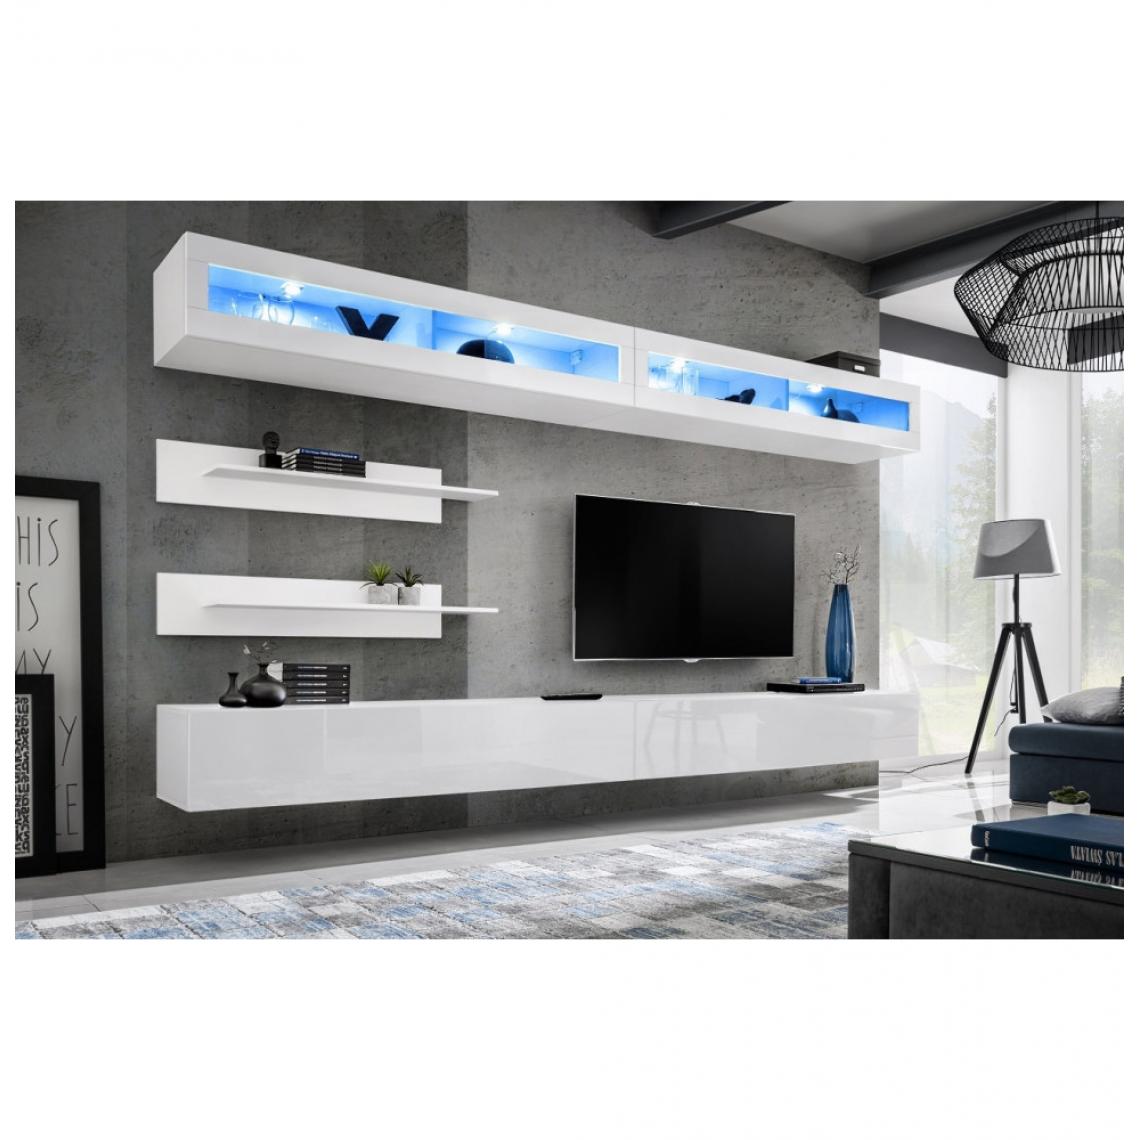 Ac-Deco - Ensemble mural - FLY I - 2 rangements LED - 2 meubles TV - 2 étagères - Blanc - Modèle 1 - Meubles TV, Hi-Fi